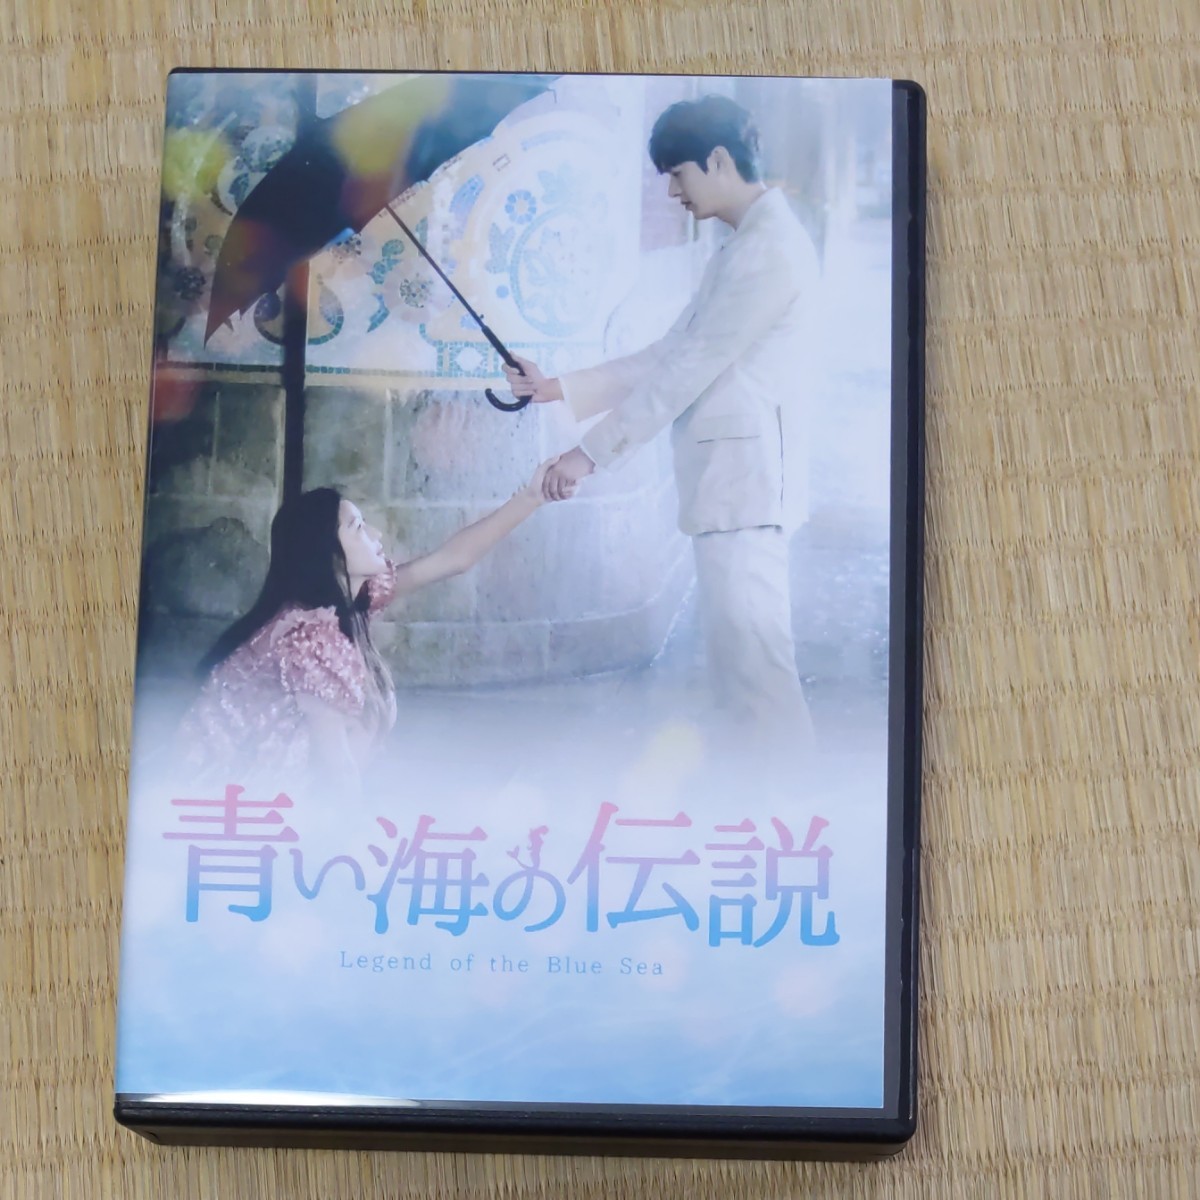 はるぎゅ様専用!青い海の伝説DVD BOX２個組特典Disc２枚OST2枚組